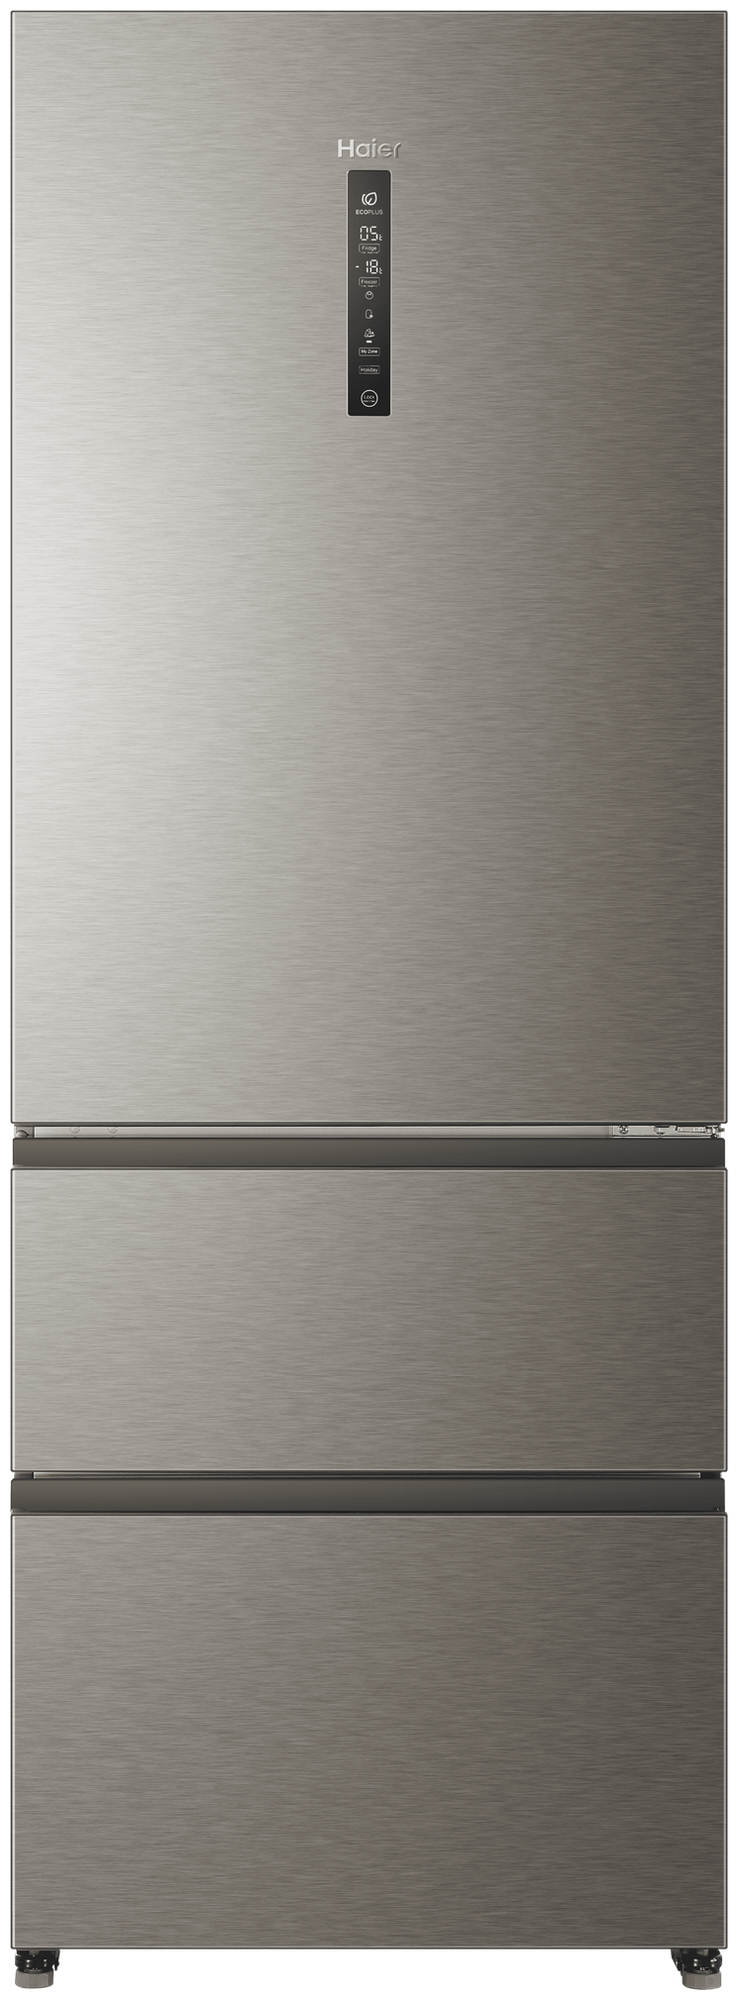 Холодильник Haier A4F742CMG, серебристый